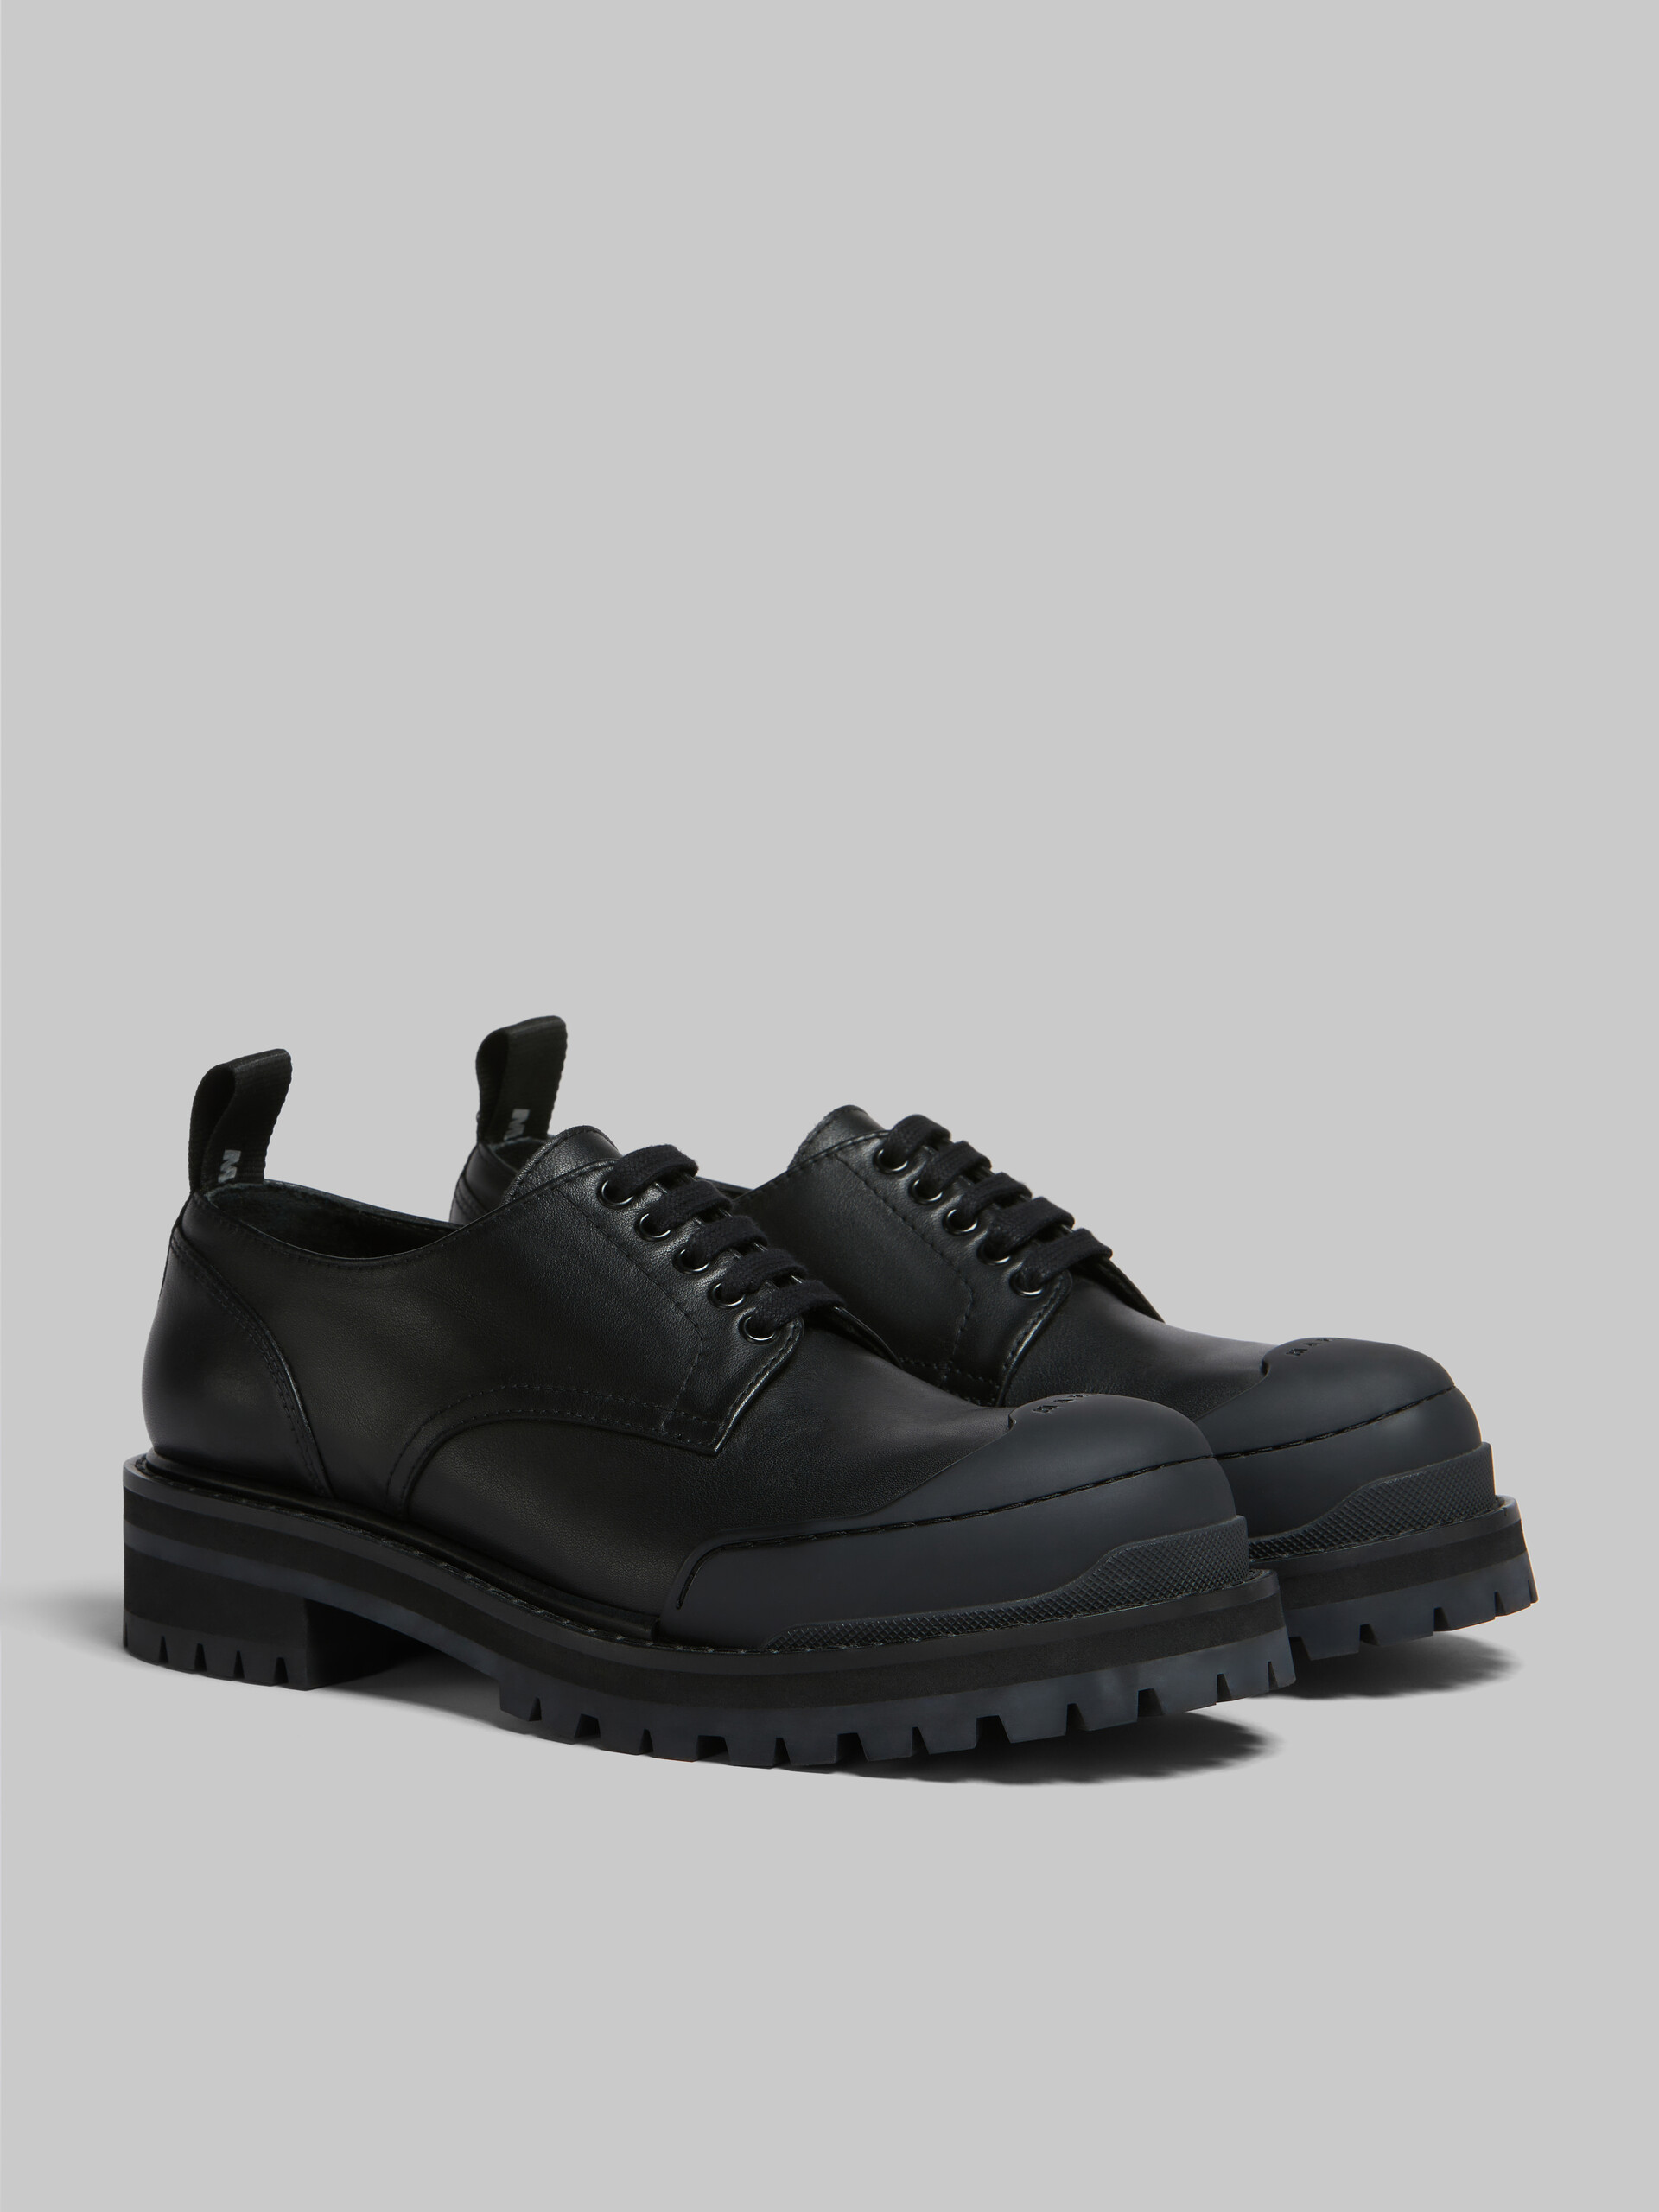 Zapato Derby Dada Army de piel negra - Zapatos con cordones - Image 2